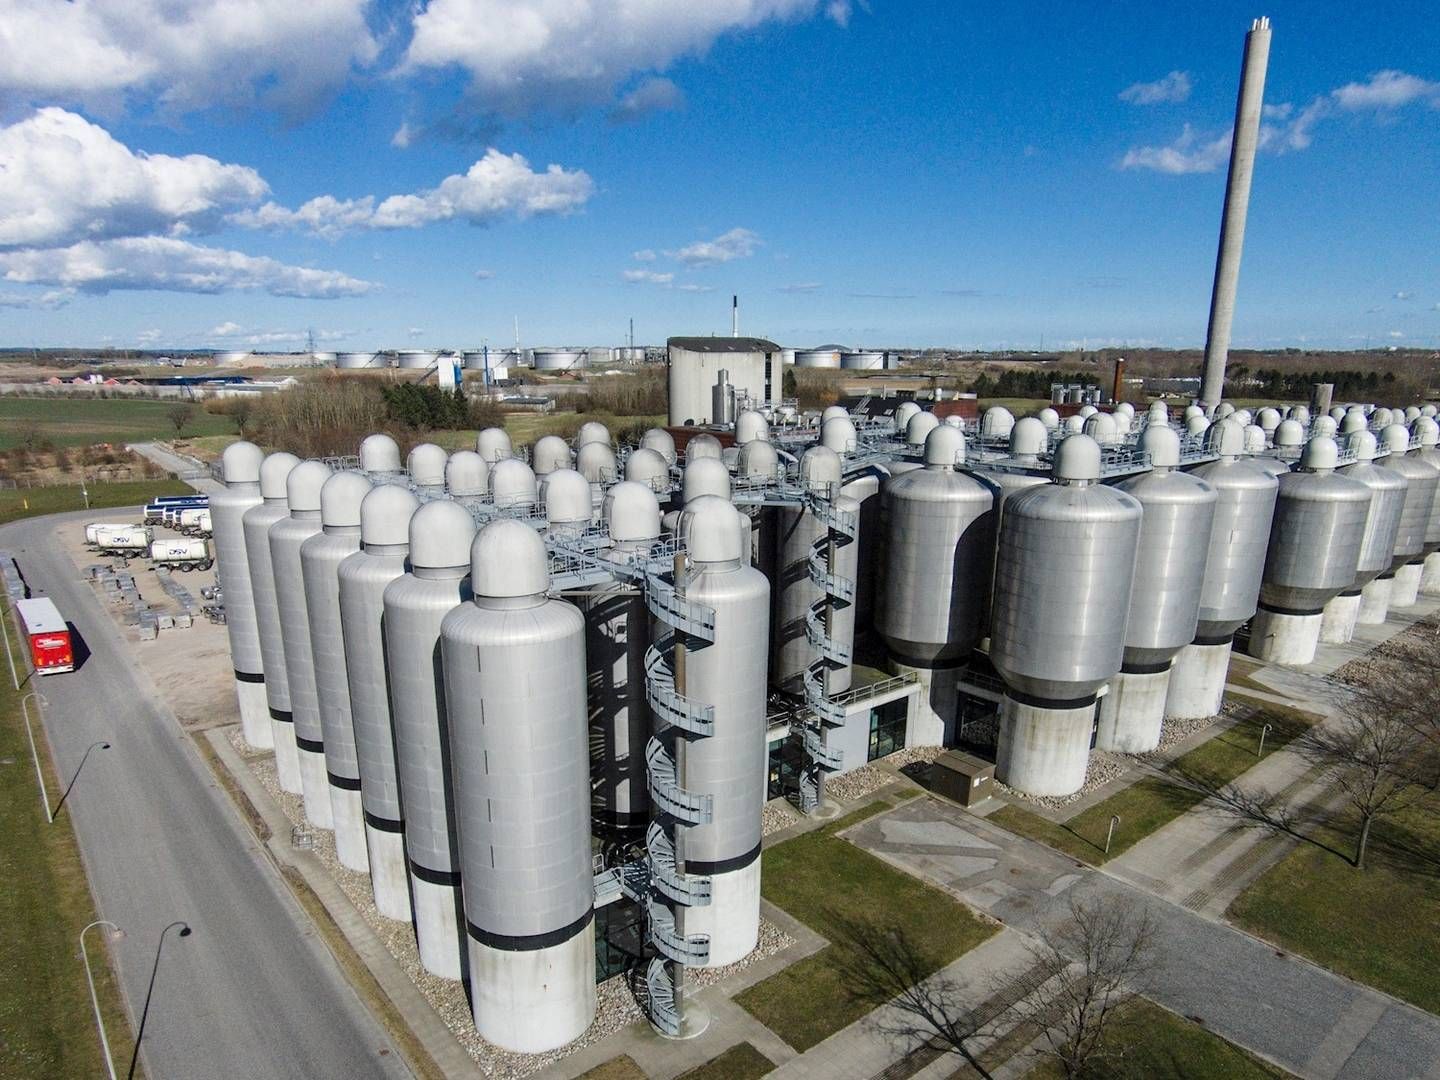 Ultraaquas teknologi kan hjælpe Carslbergs brygeri med at genbruge 90 pct. af vandet, ifølge vandteknologivirksomheden. | Foto: CARLSBERG/PR